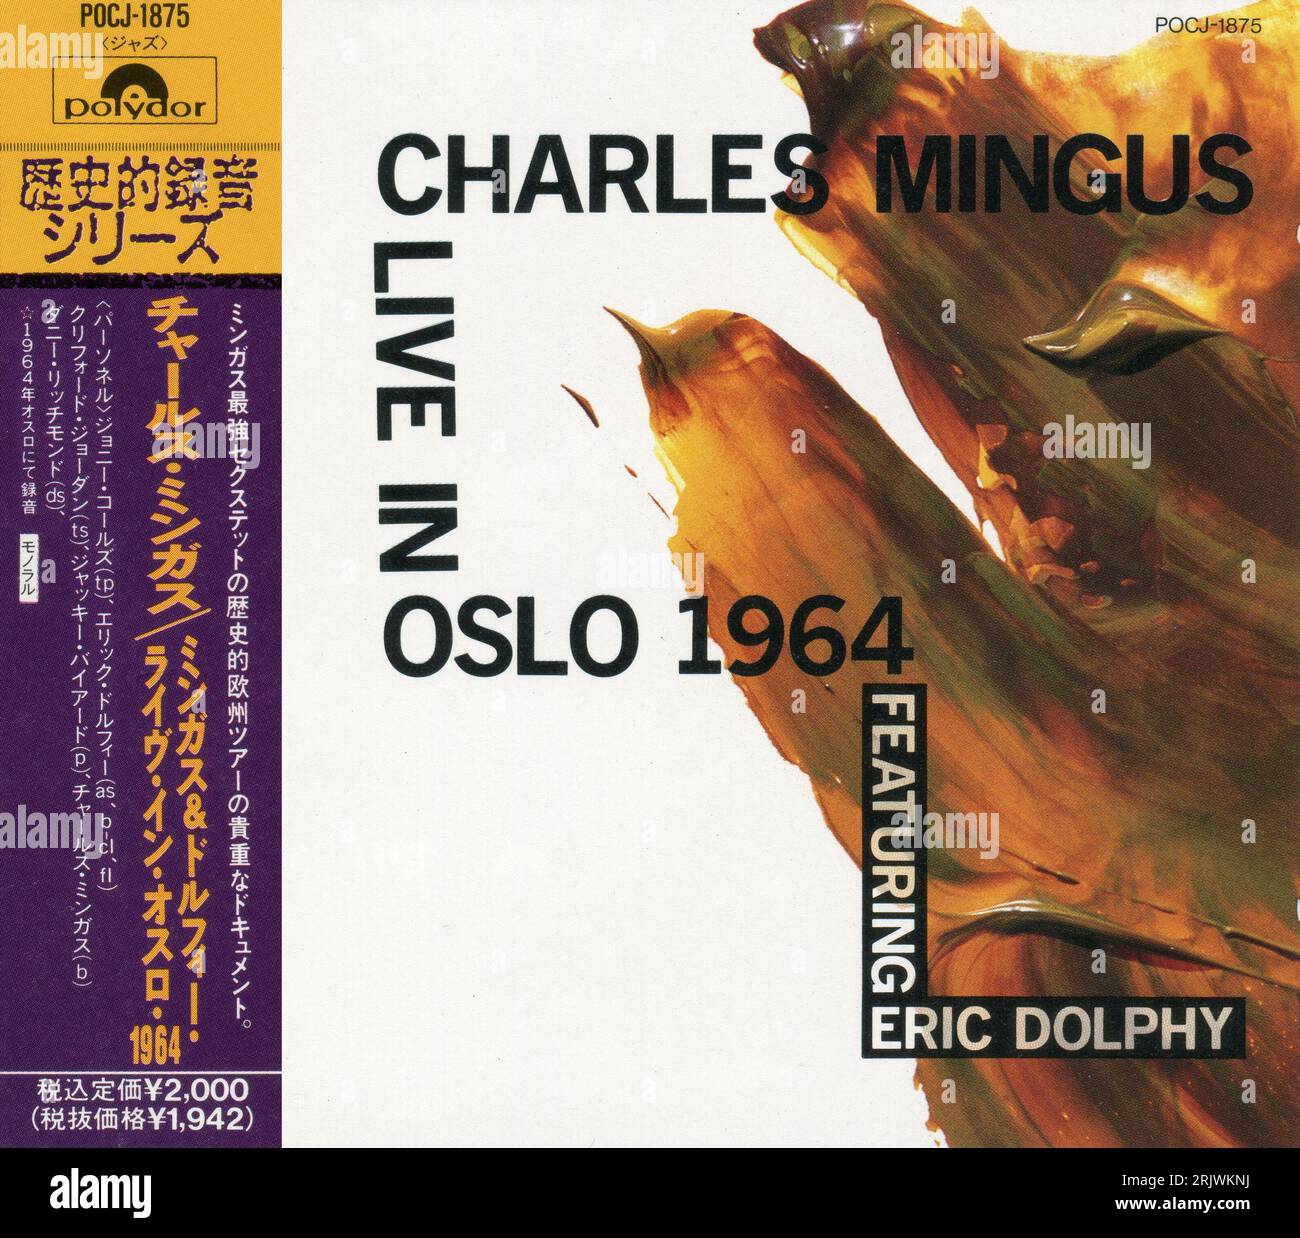 CD: Charles Mingus – Live in Oslo 1964. (POCJ-1875), rilasciato:1990. Foto Stock